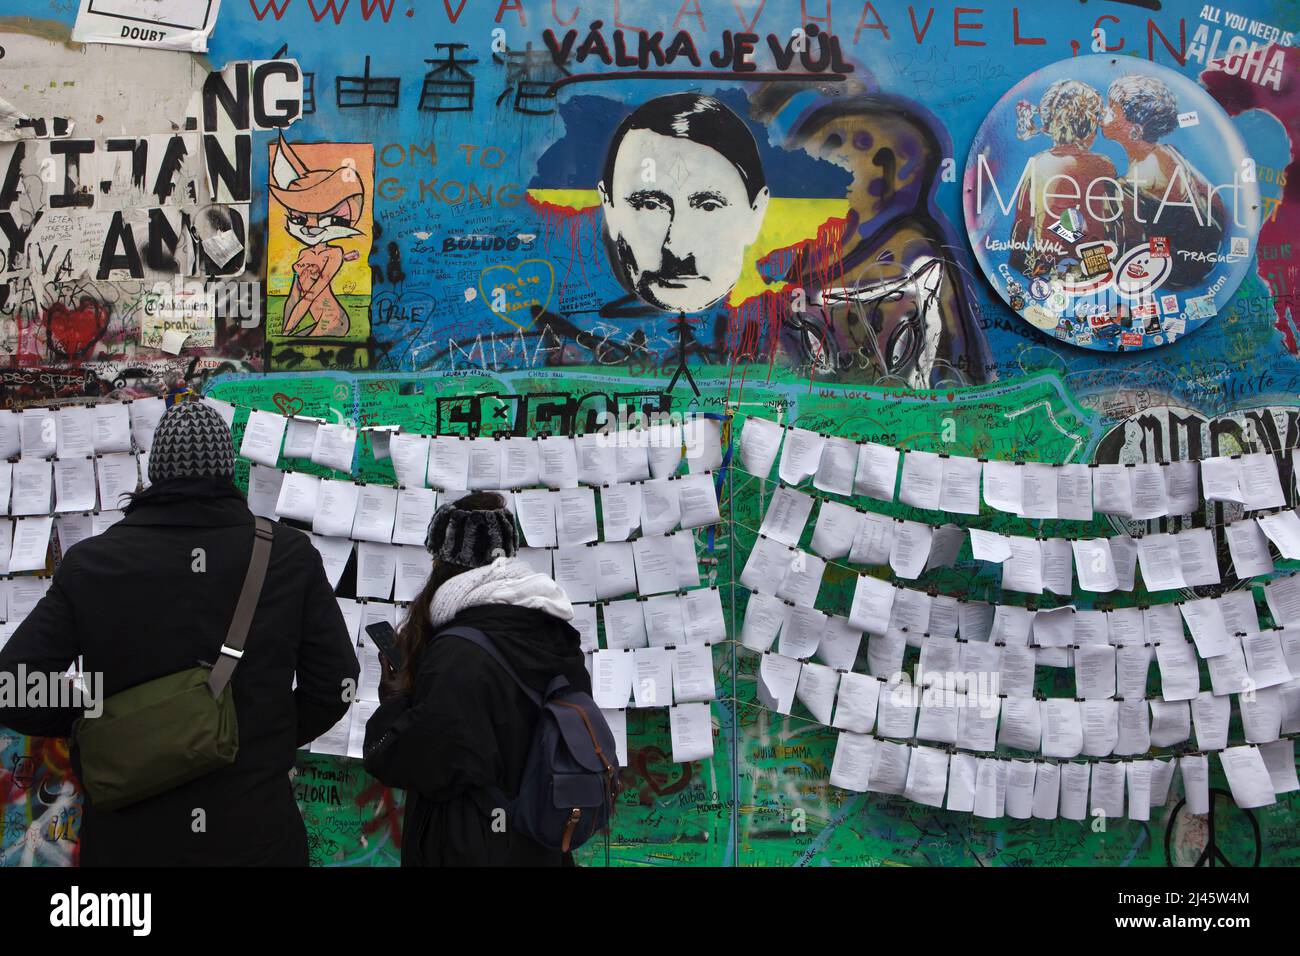 Le président russe Vladimir Poutine est représenté sur le mur Lennon (Lennonova zeď) à Prague, en République tchèque. Le président Vladimir Poutine est dépeint avec une coupe de cheveux caractéristique et une moustache à brosse à dents d'Adolf Hitler placé sur la carte sanglante de l'Ukraine pour protester contre l'invasion russe de l'Ukraine en 2022. L'inscription tchèque au-dessus de la tête de Poutine 'Válka je vůl' (les moyens littéraires: War is an ox) est une ligne d'une chanson populaire du groupe de rock tchèque 'Synkopy 61'. Les touristes photographiés le 2 avril 2022 ont lu les paroles d'antiguerre placées à côté du mur Lennon. Banque D'Images